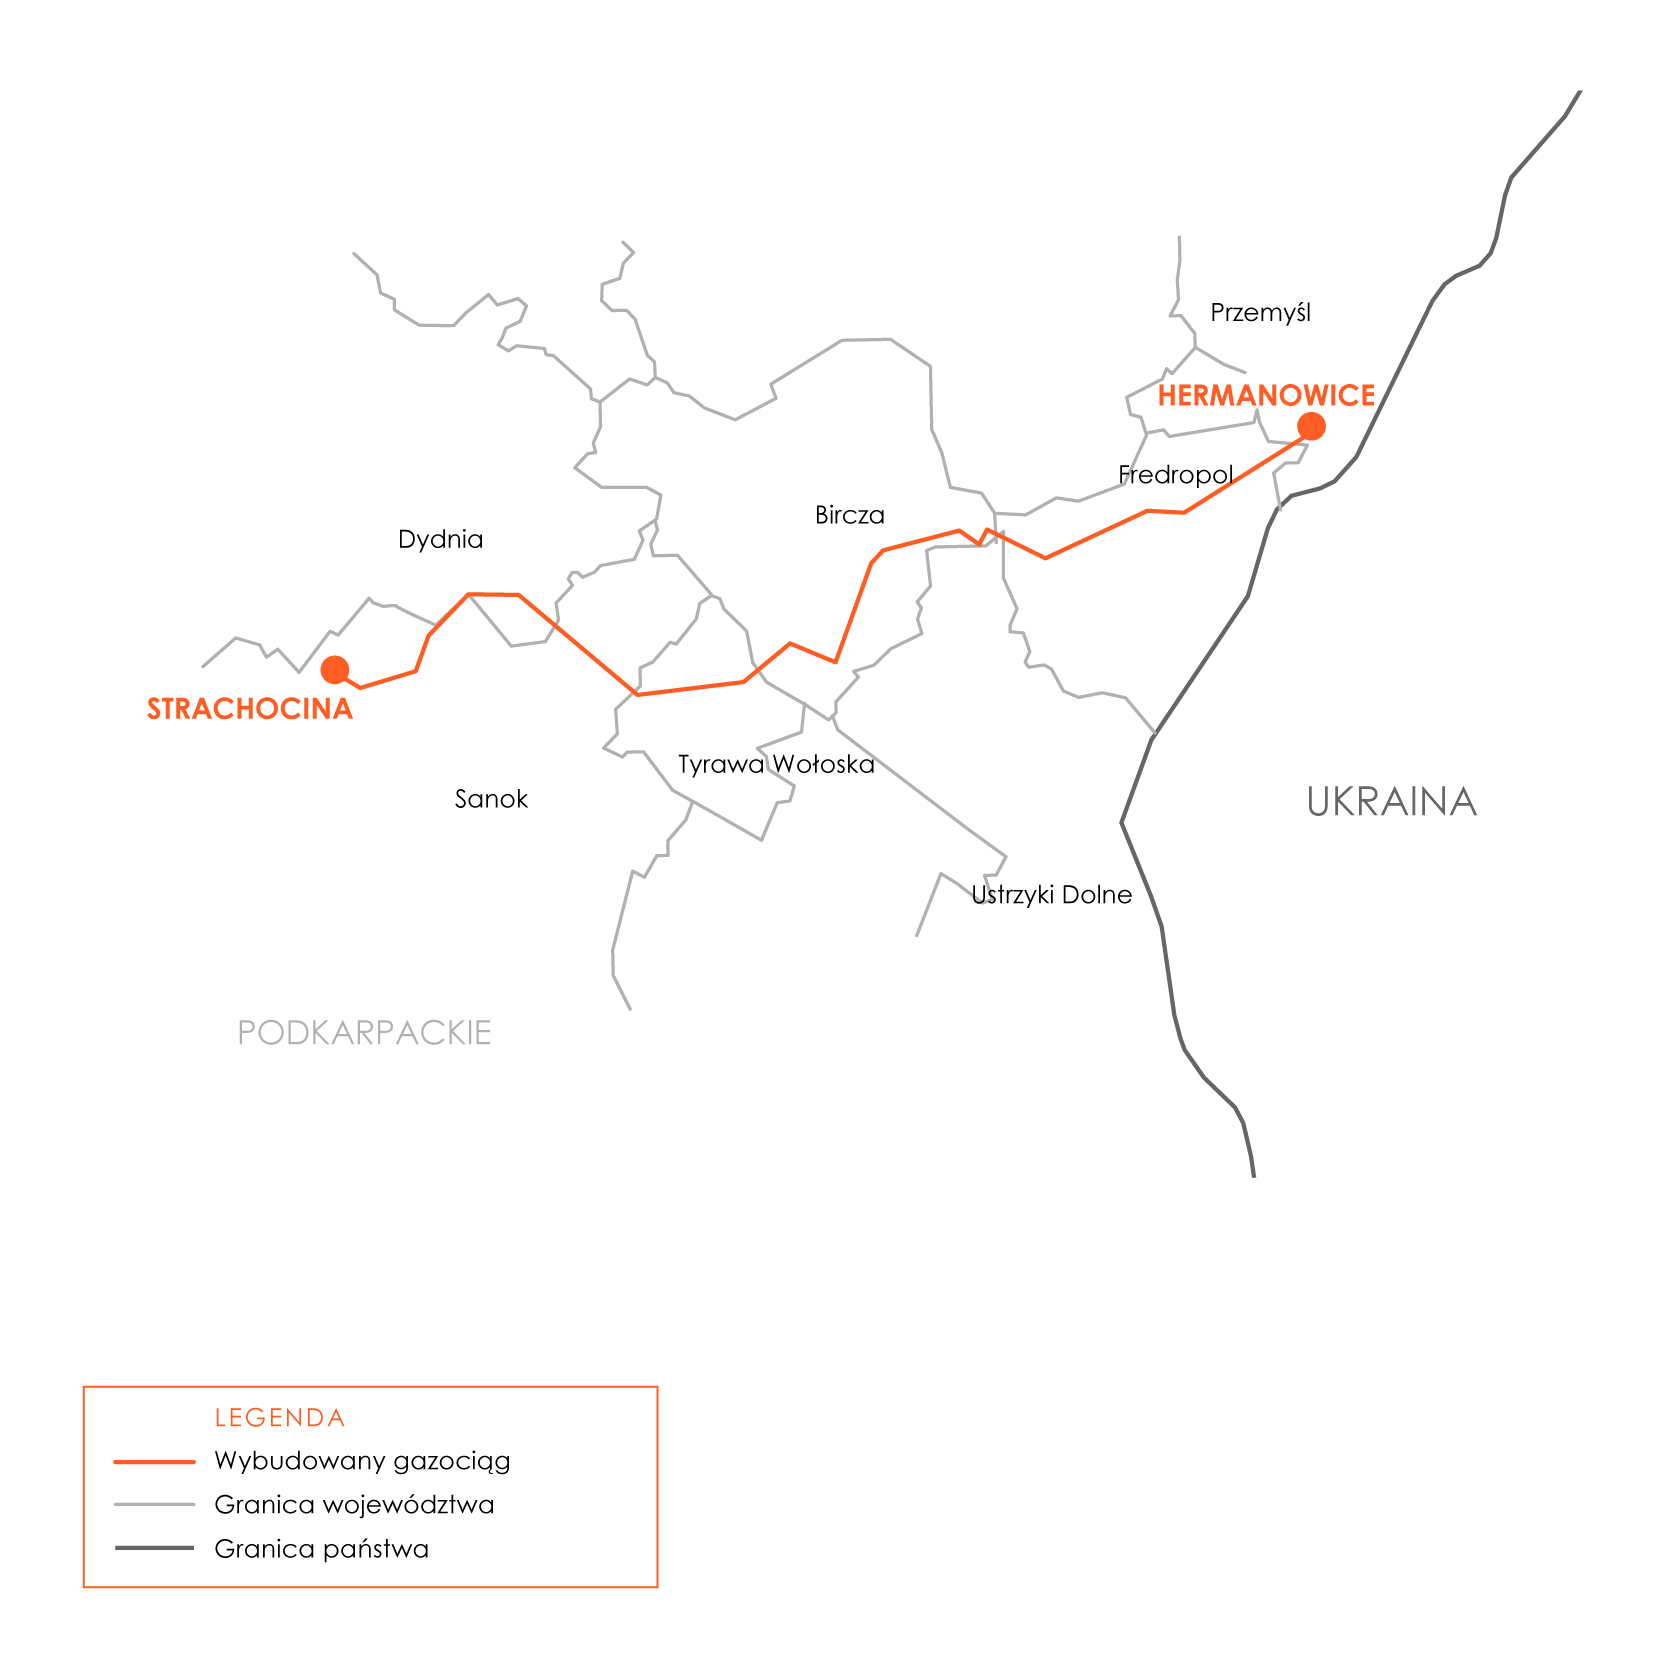 Mapka z przebiegiem gazociągu Hermanowice-Strachocina